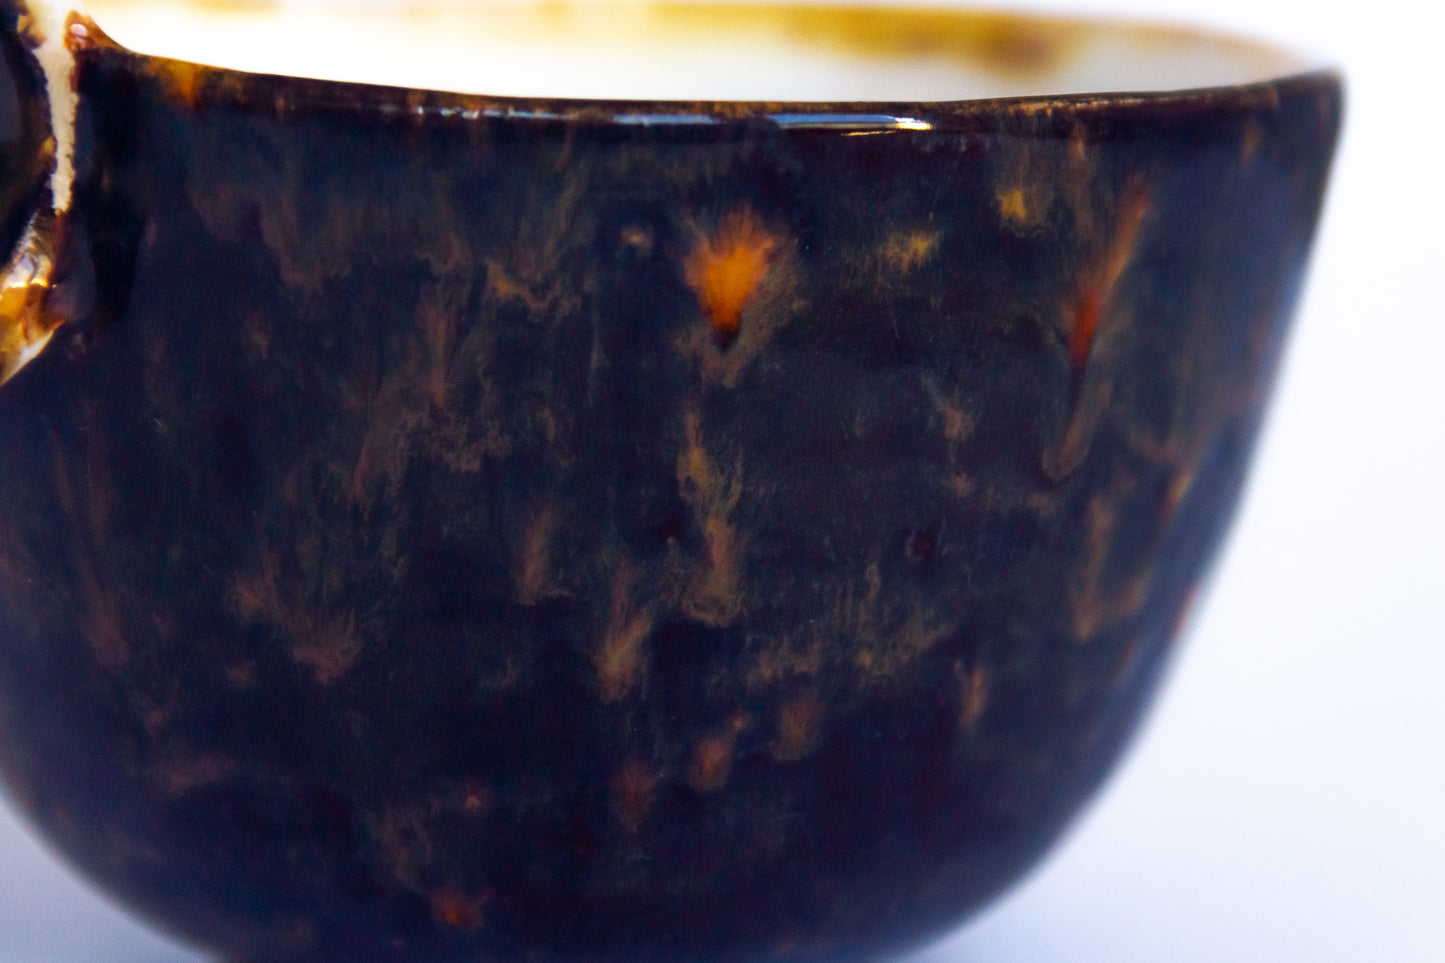 Kubek ceramiczny w kolorze beżowo-brązowym